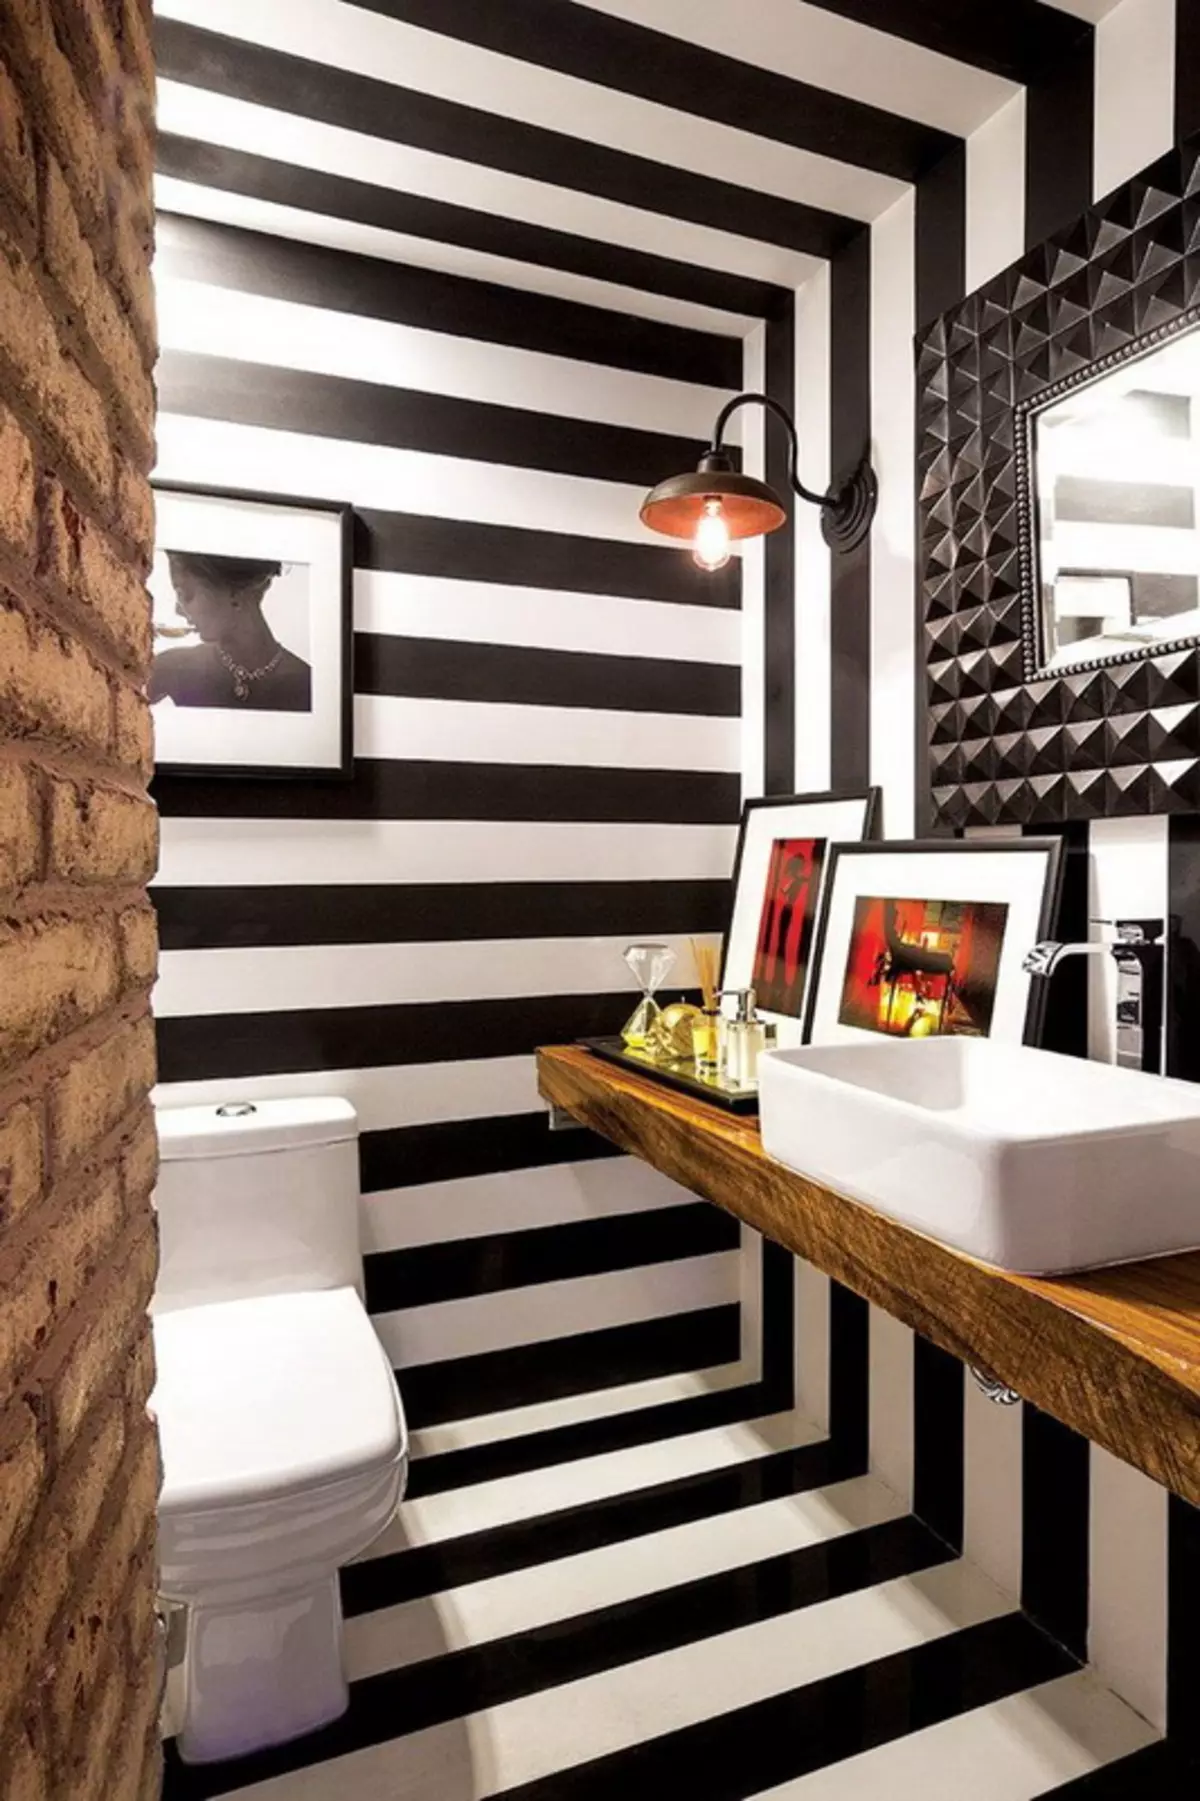 Schwarze Toilette (67 Fotos): WC-Design in Schwarz-Weiß-Farben, Auswahl einer dunklen Farb-Toilette in einer Wohnung, Endbearbeitung mit schwarzen und roten Fliesen 10501_32